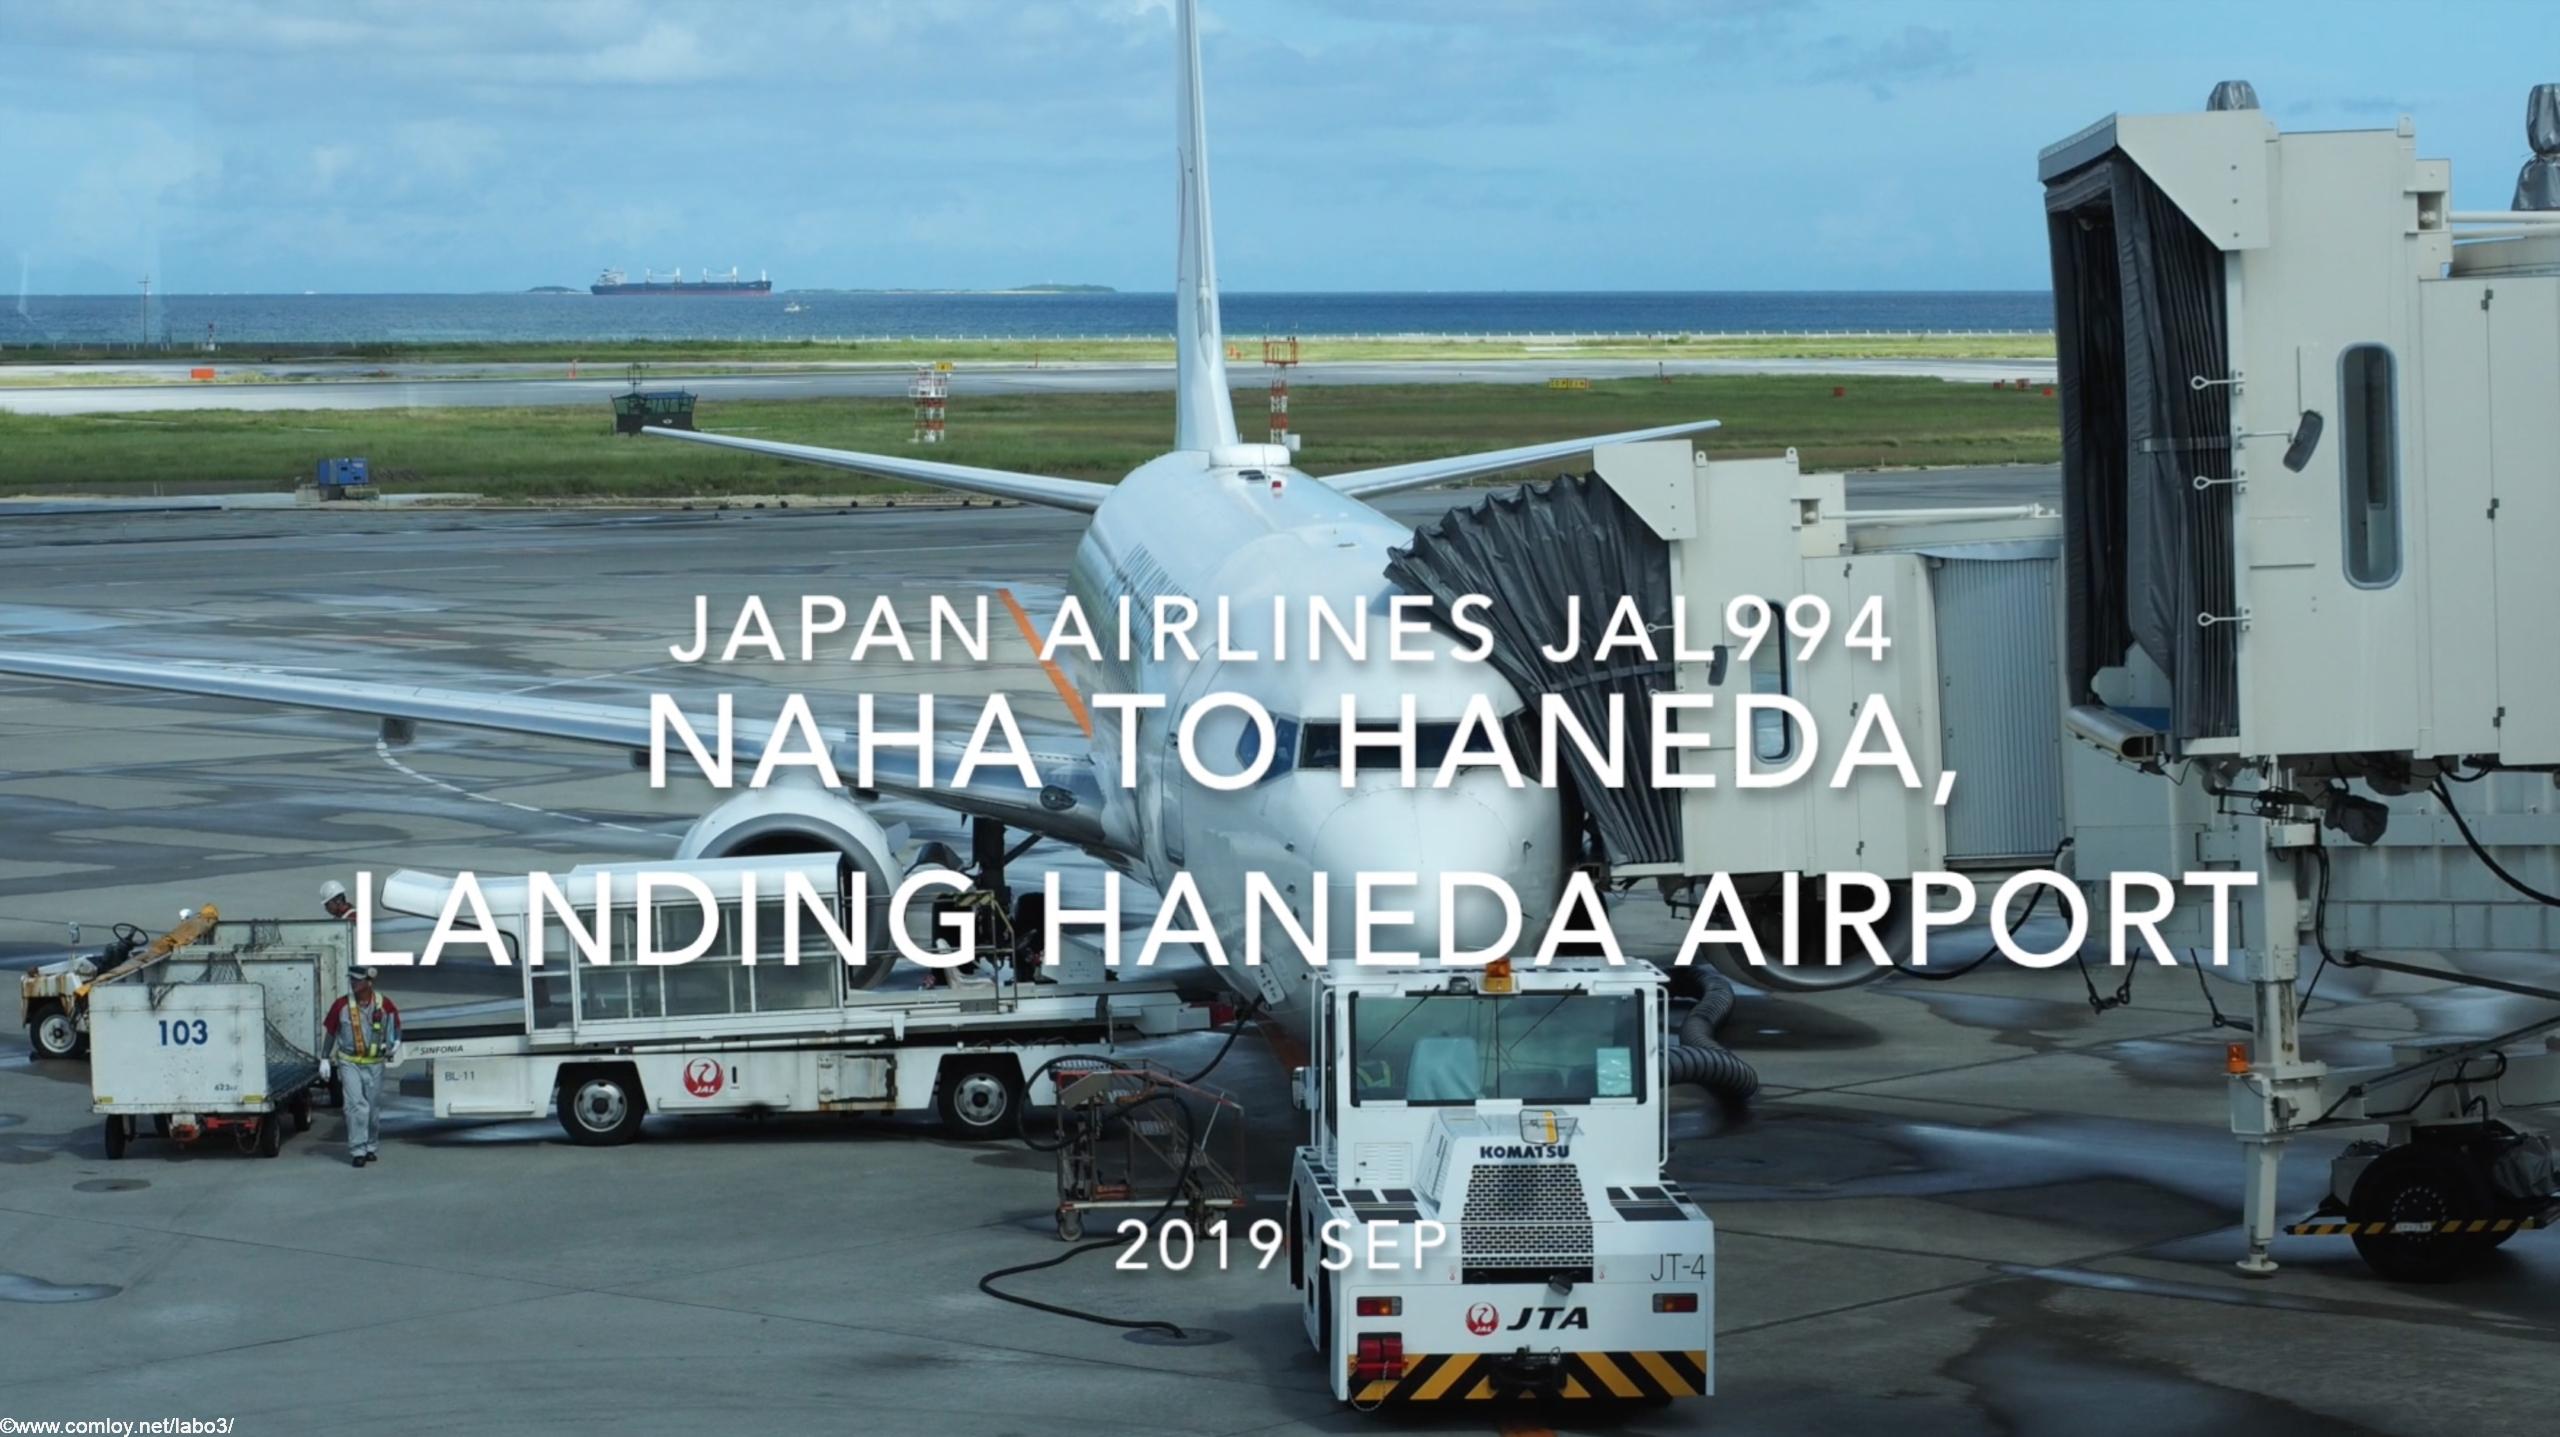 【機内から離着陸映像】2019 Sep Japan Airlines JAL994 NAHA to HANEDA, Landing HANEDA Airport